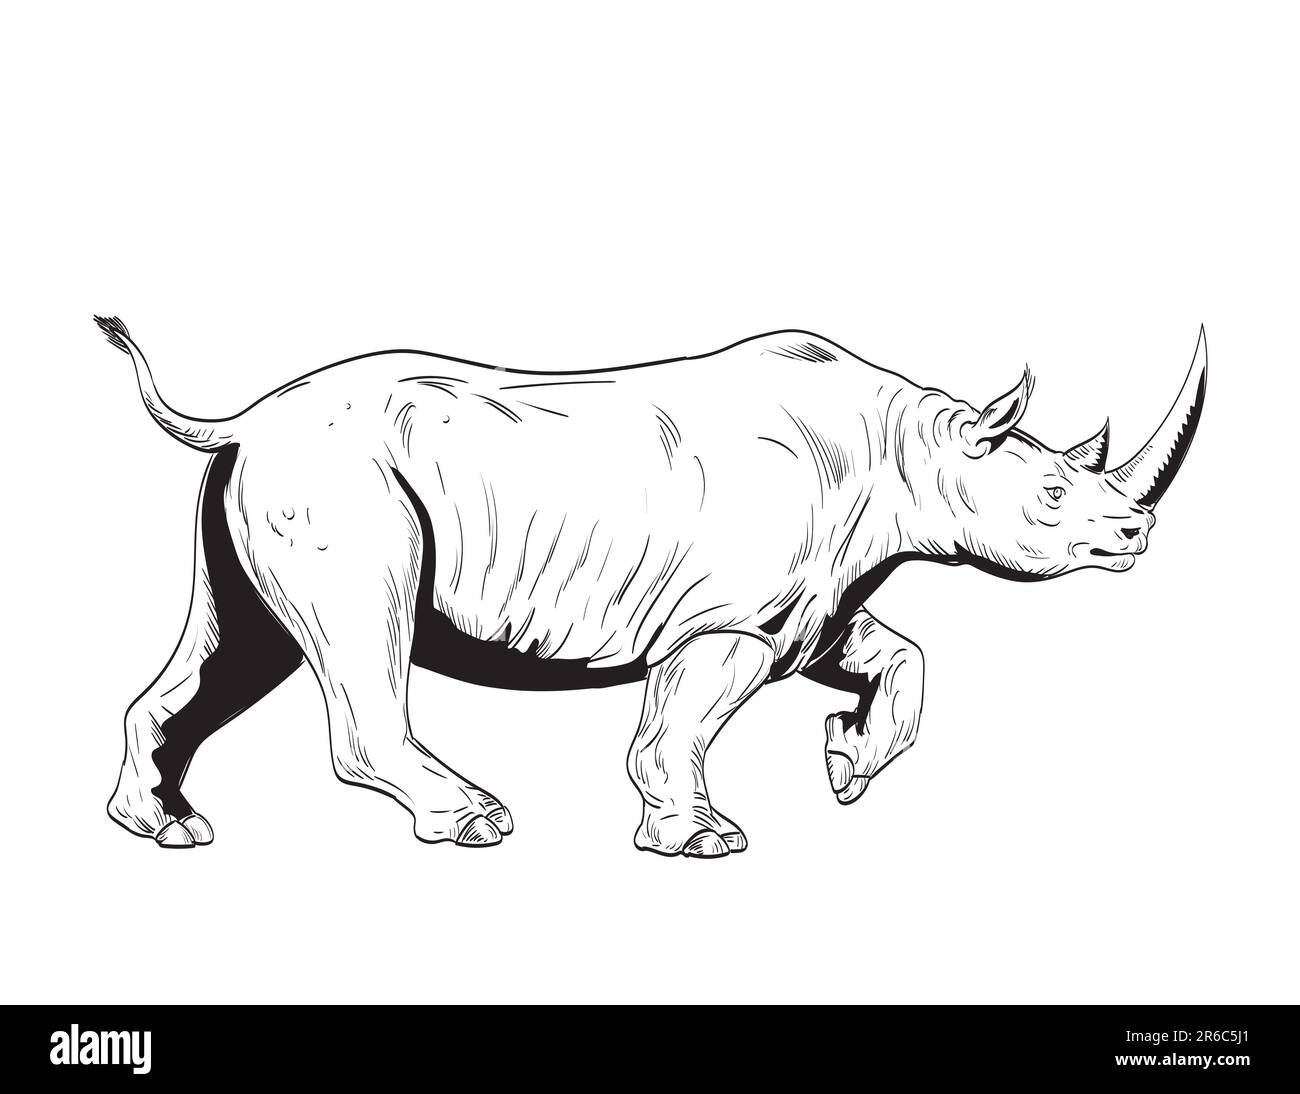 Dessin de style BD ou illustration d'un rhinocéros ou d'un rhinocéros, un ongulés à bout impair de la famille des rhinocéros, en charge vu de côté isolé Banque D'Images